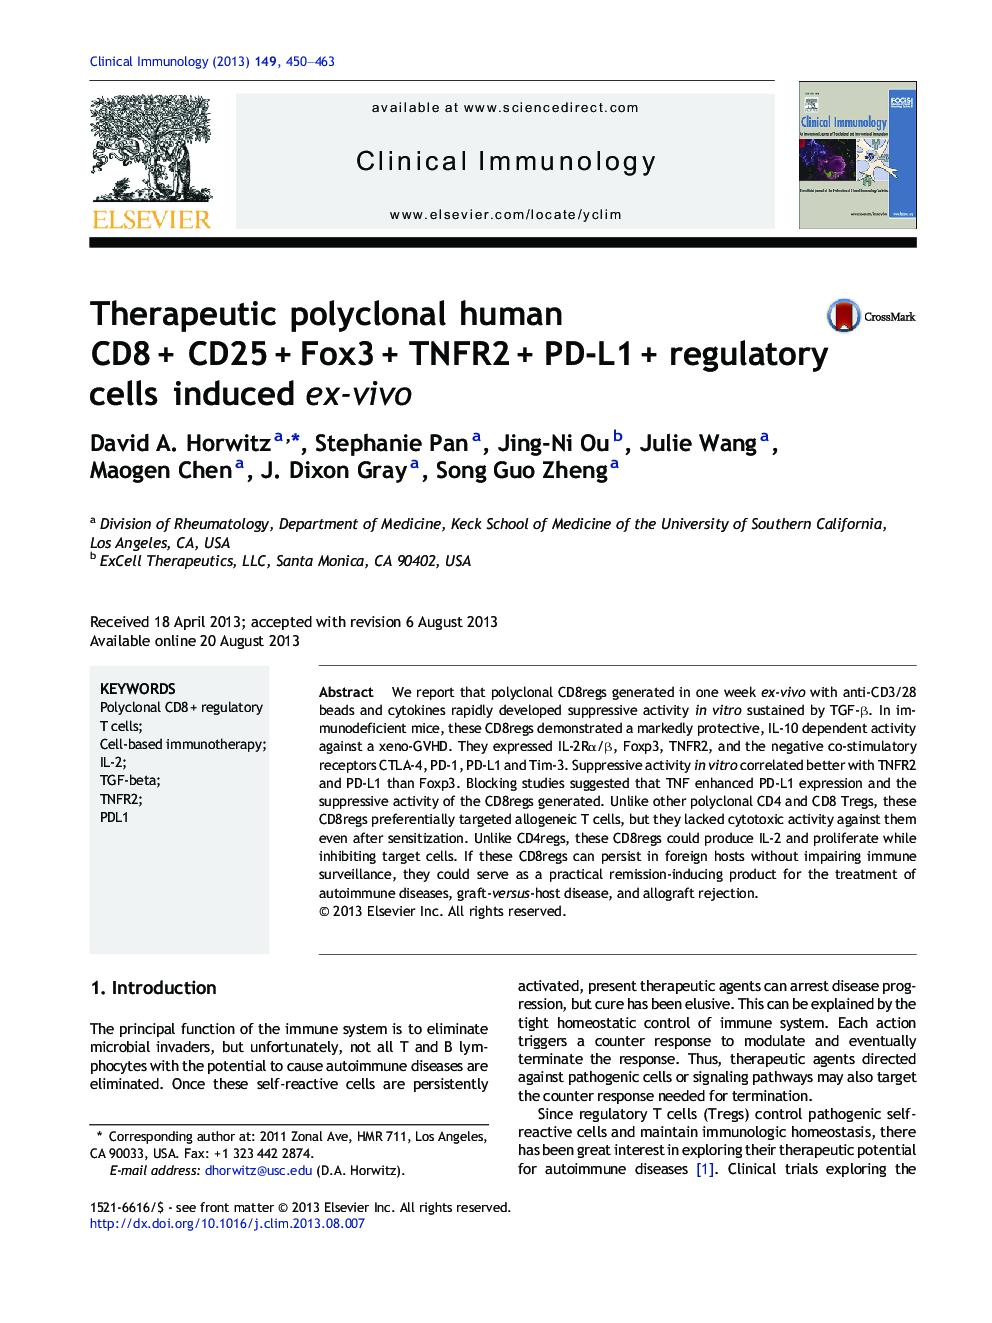 Therapeutic polyclonal human CD8Â + CD25Â + Fox3Â + TNFR2Â + PD-L1Â + regulatory cells induced ex-vivo